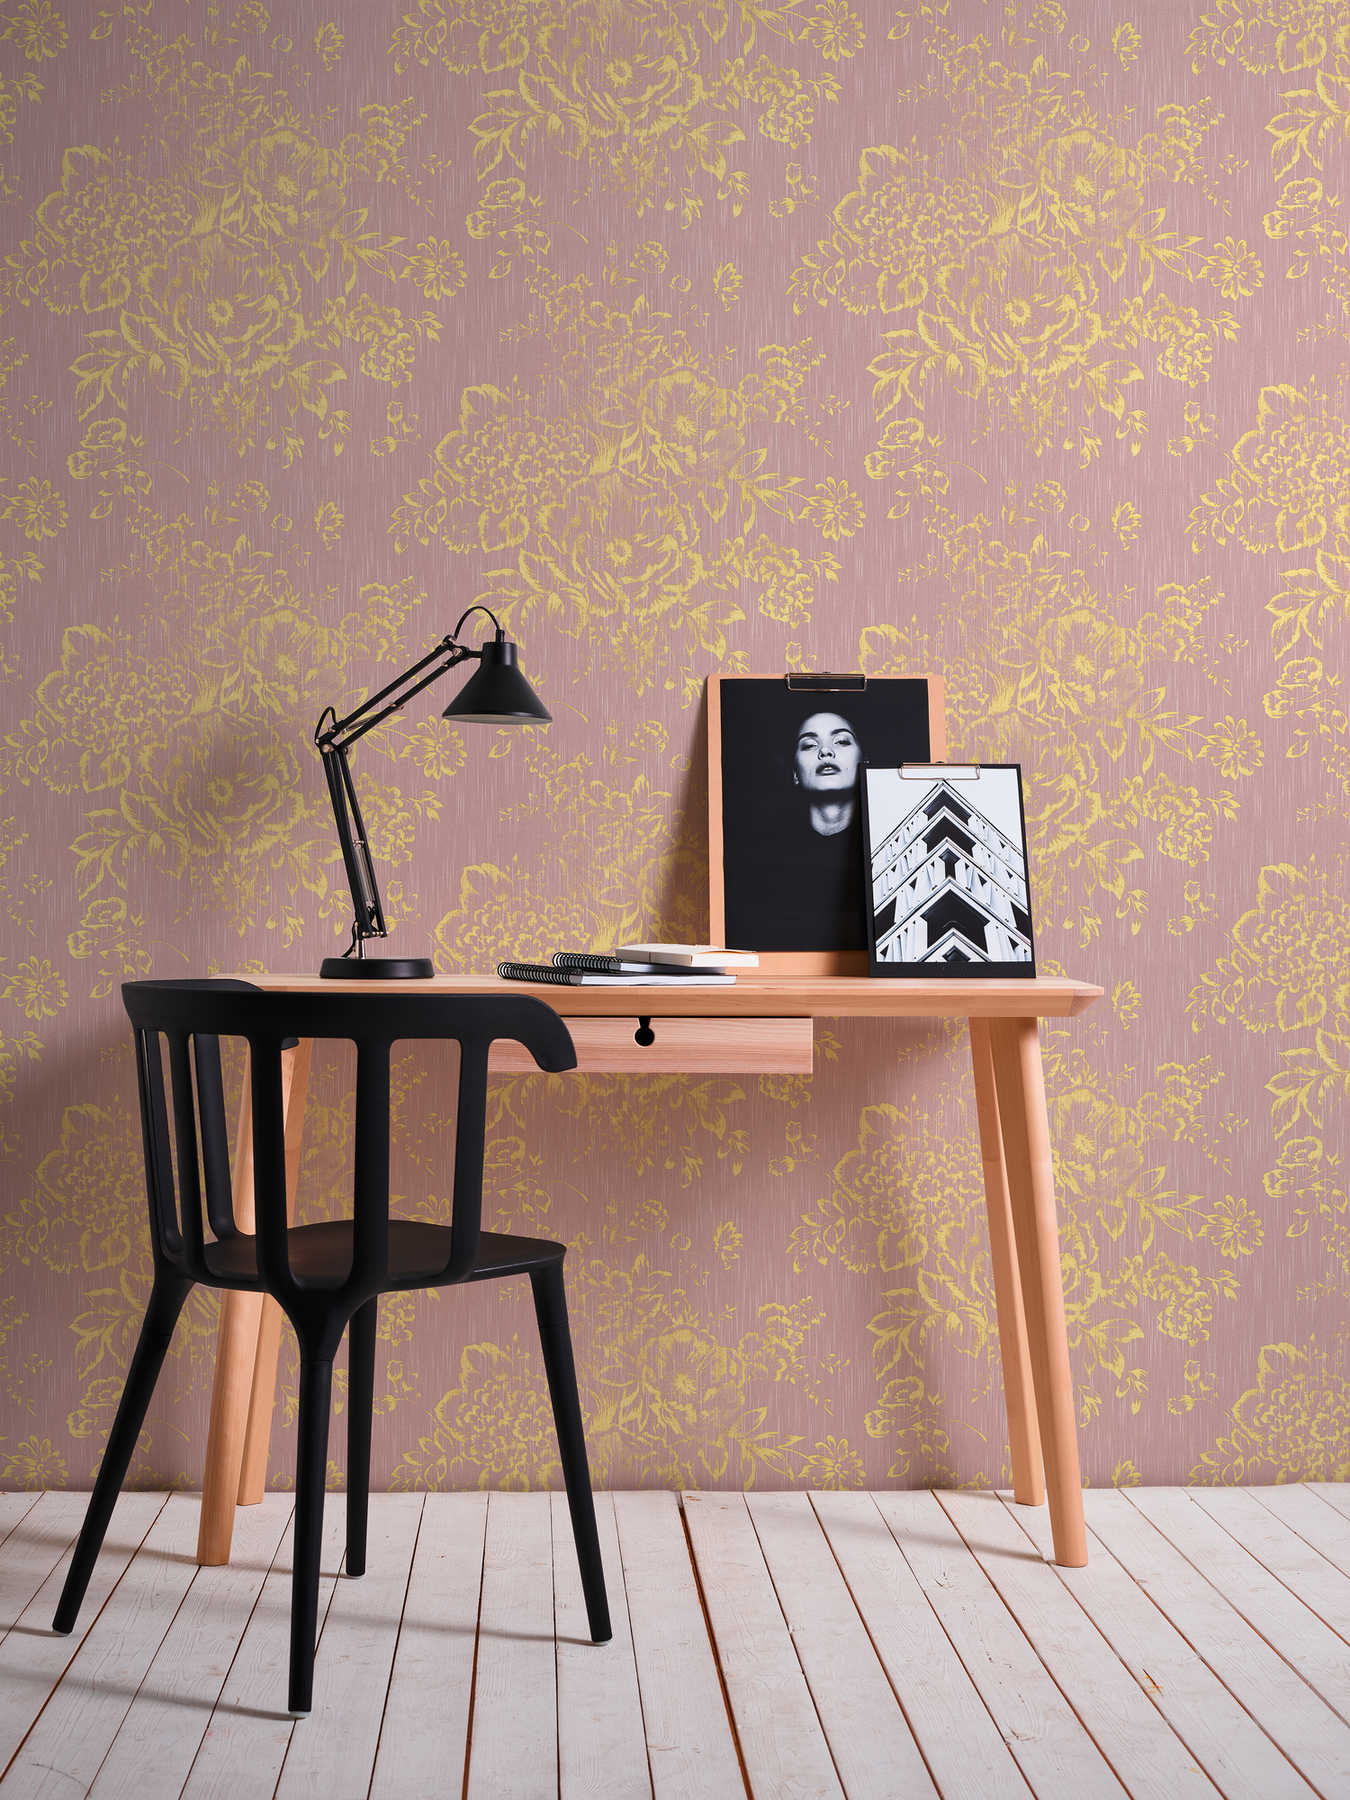             Papier peint structuré avec motif floral doré - or, rose
        